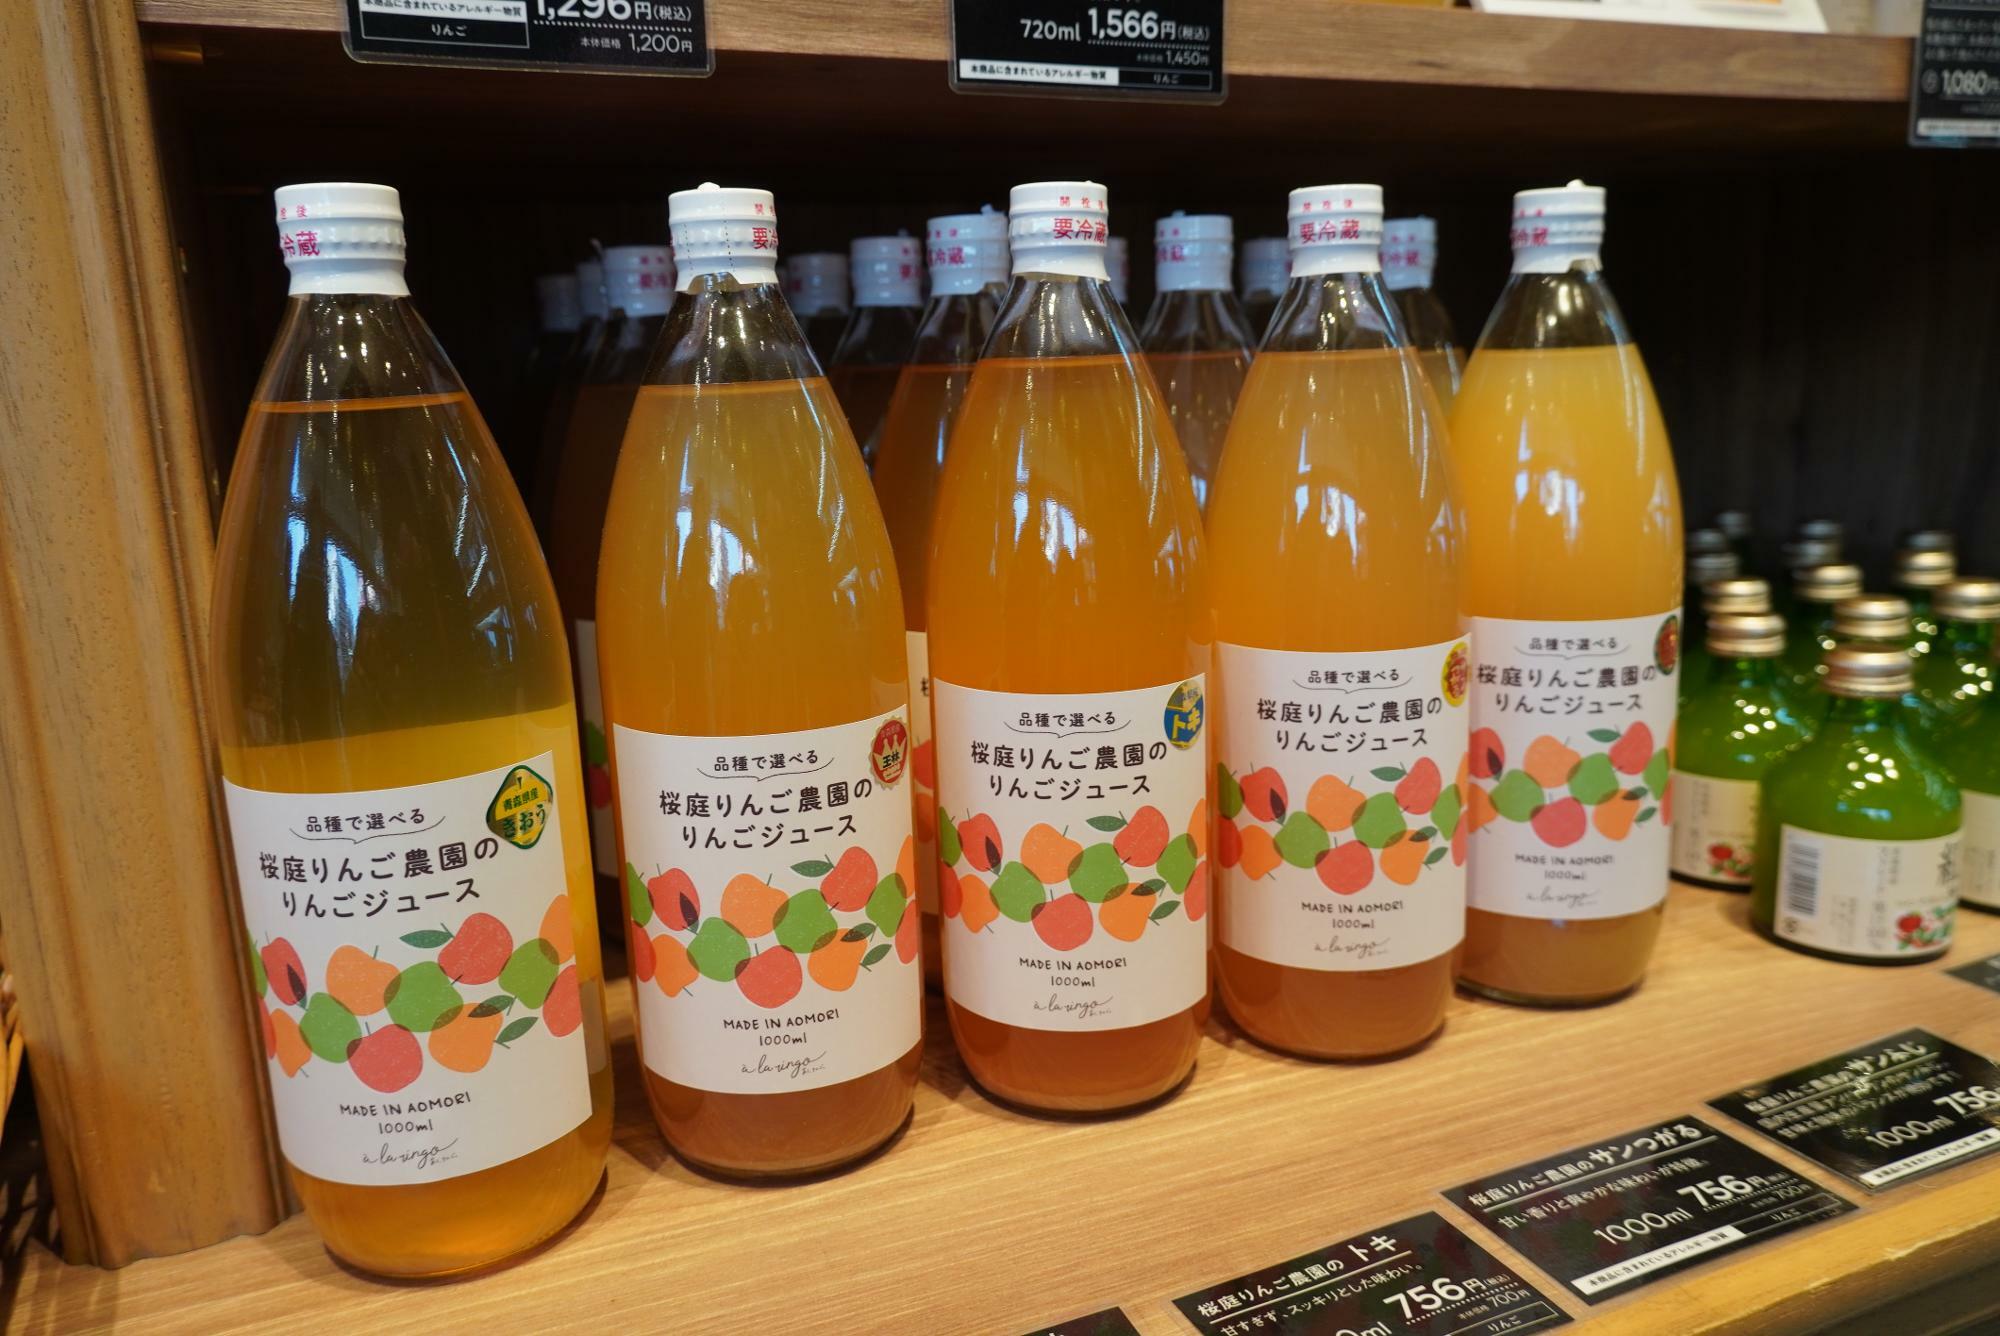 「品種で選べる桜庭りんご農園のりんごジュース」